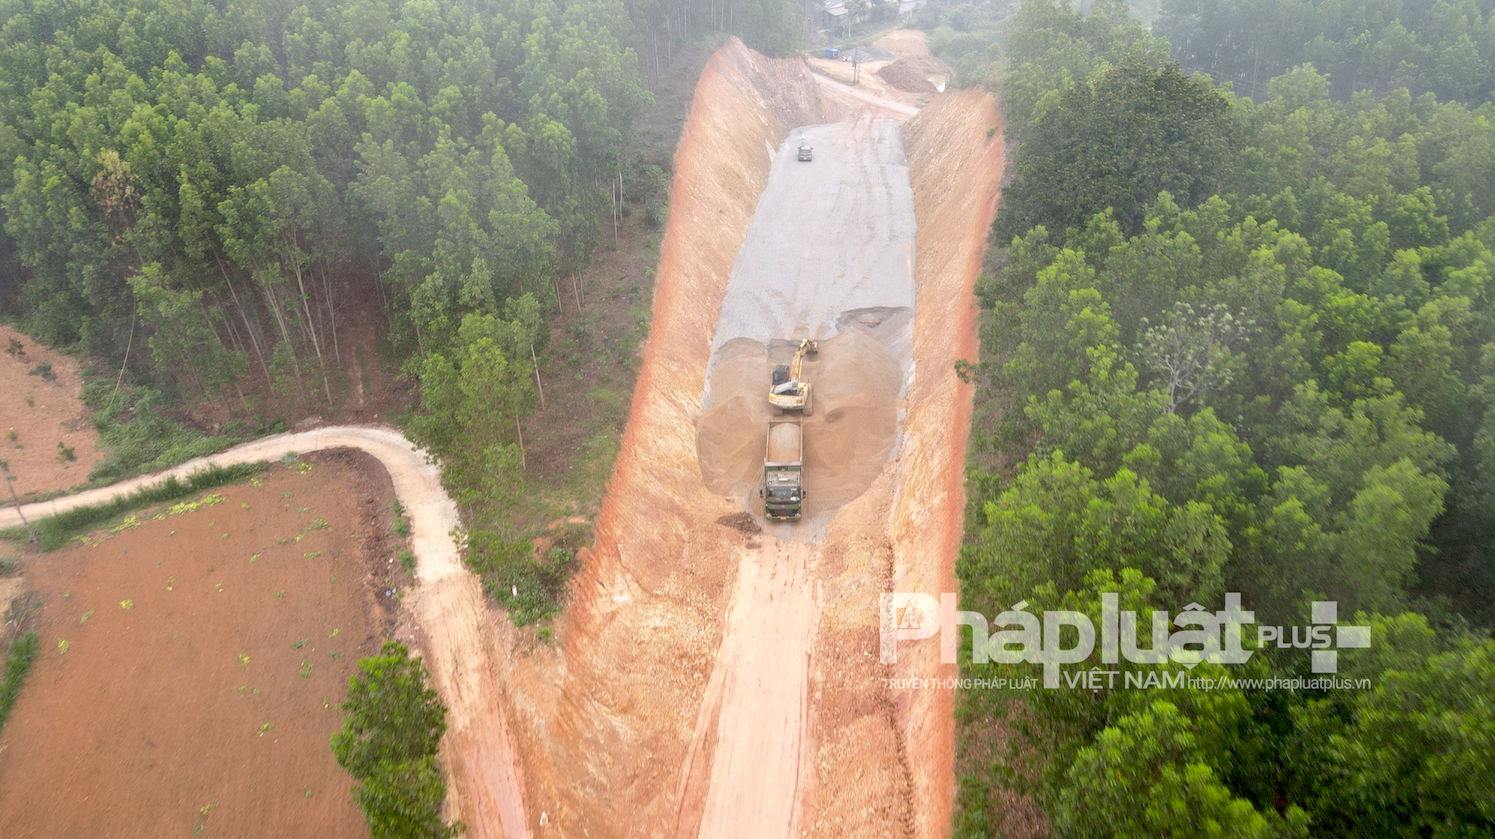 Bắc Giang: Một doanh nghiệp bị xử phạt 100 triệu đồng vì khai thác đất mà không đăng ký